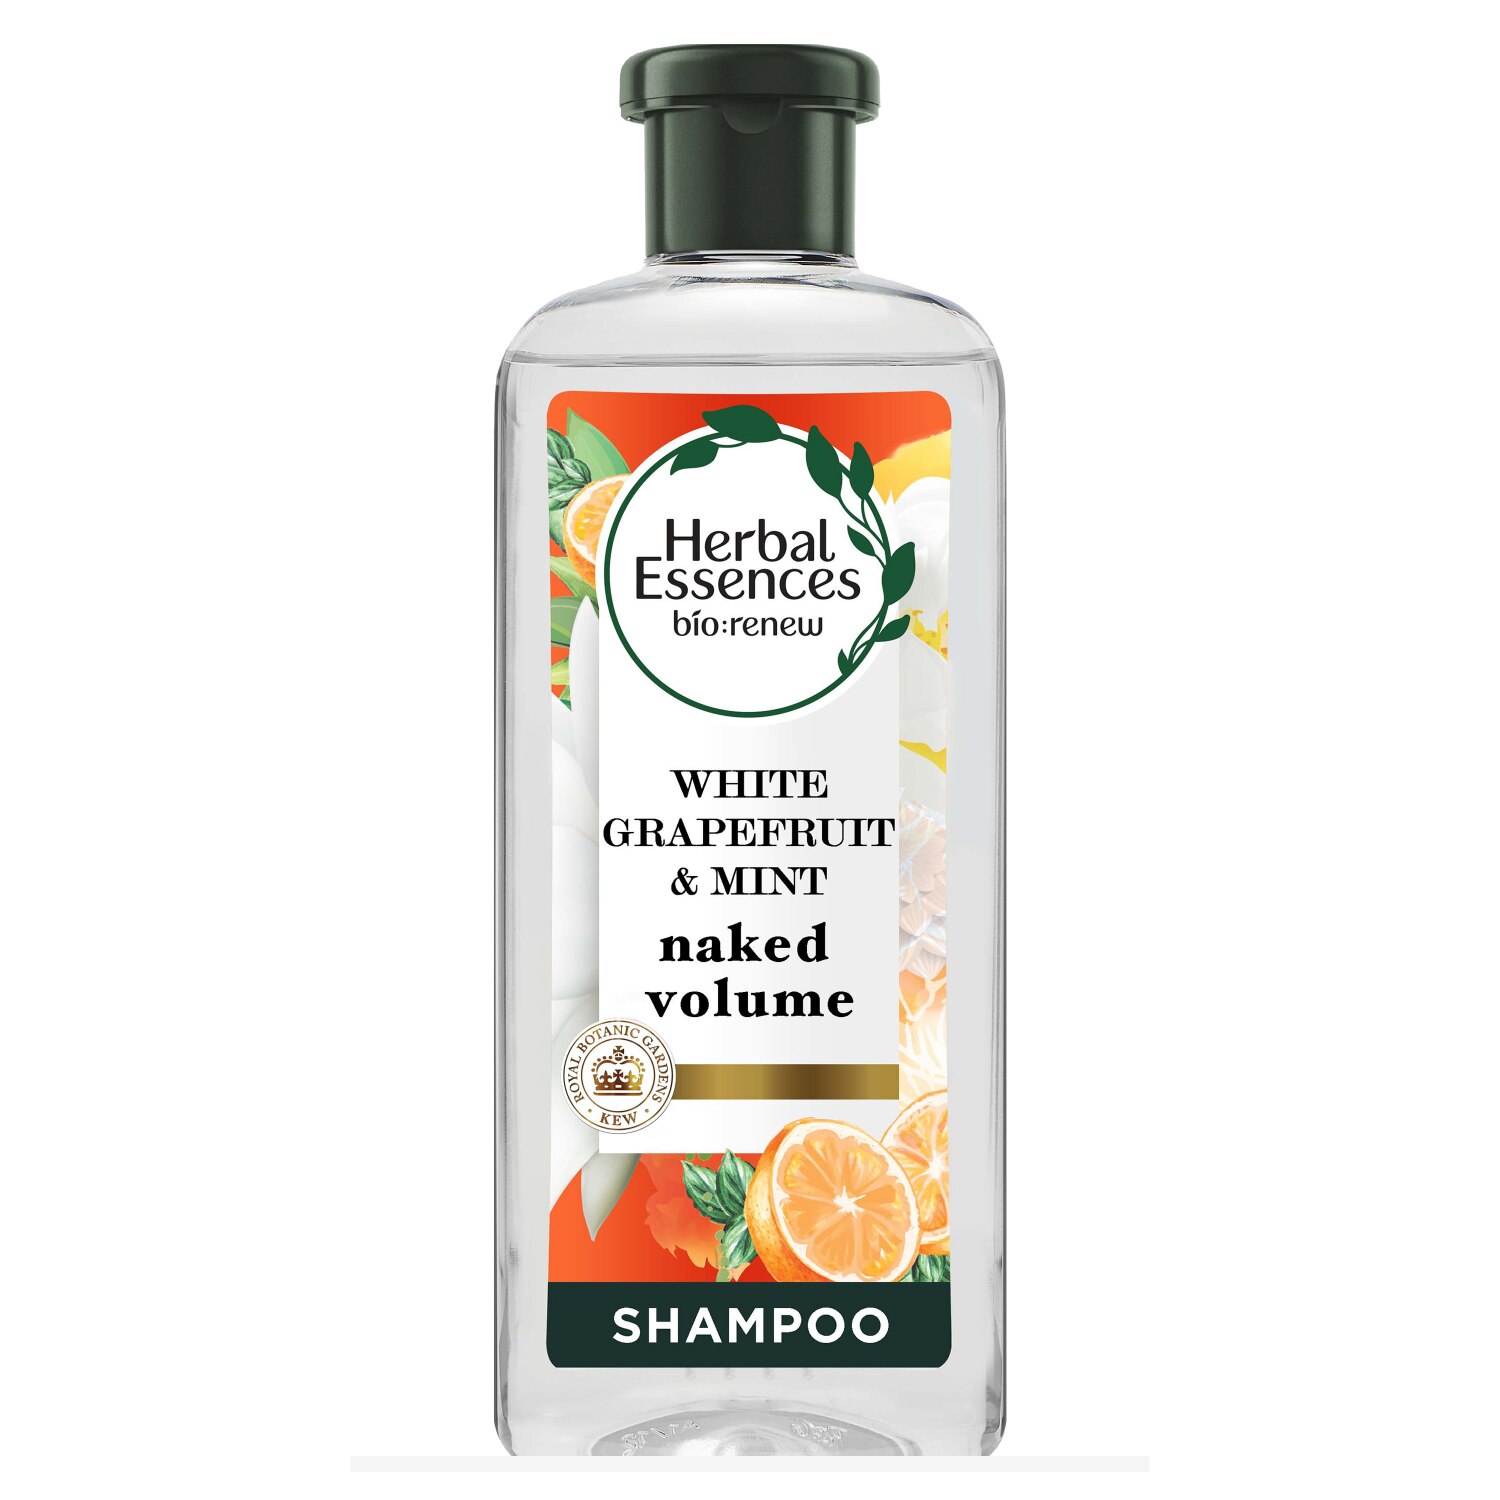 Herbal Essences Grapefruit Volume Shampoo, 13.5 OZ